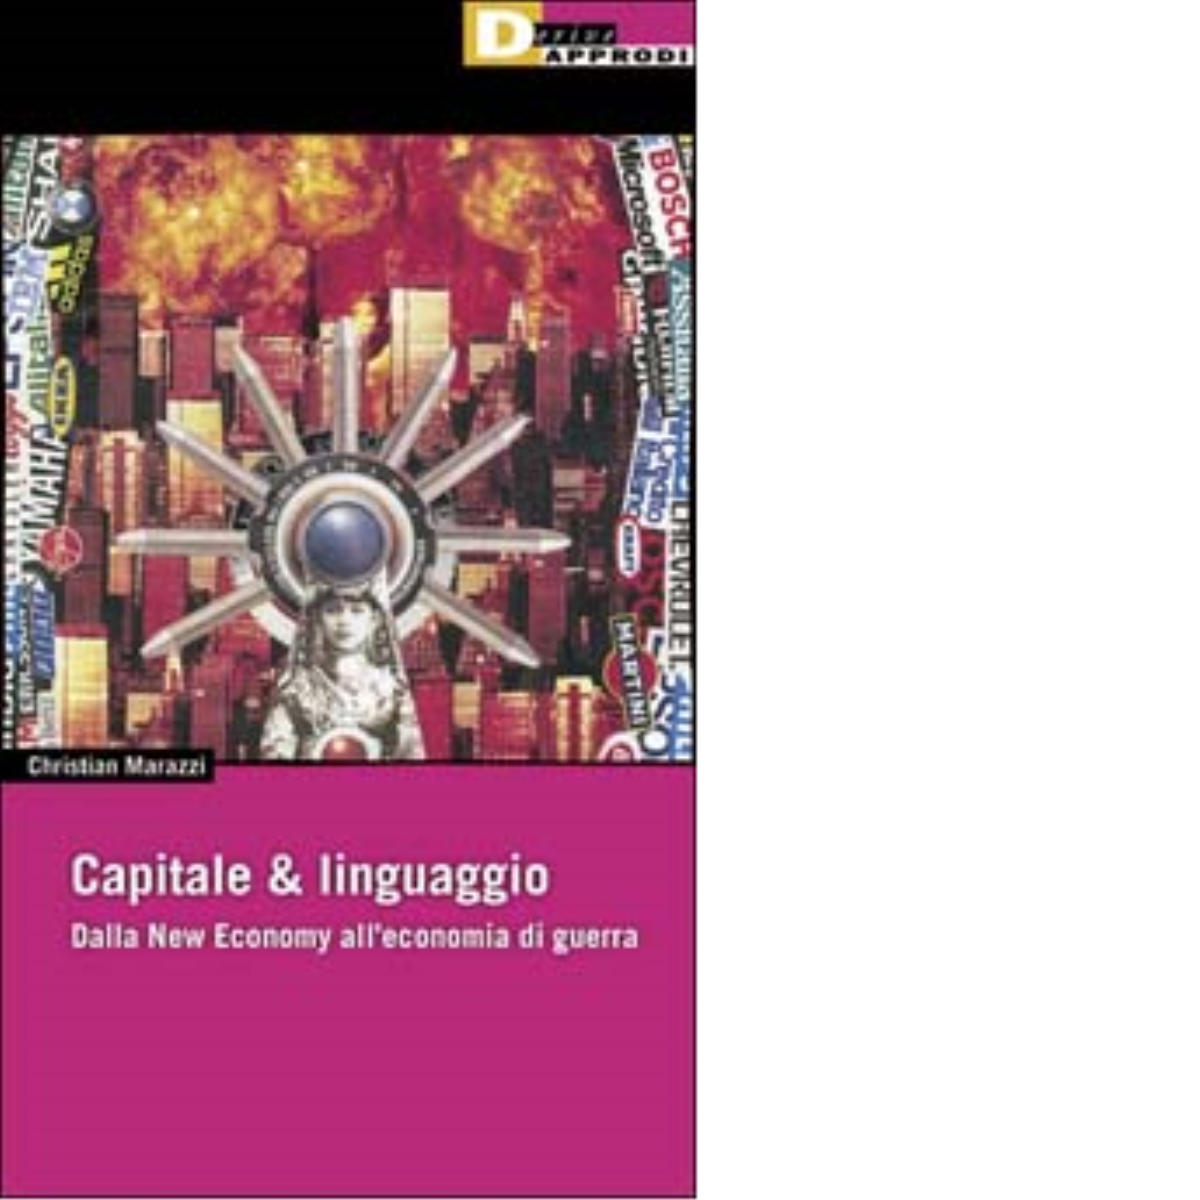 CAPITALE & LINGUAGGIO. di CHRISTIAN MARAZZI - DeriveApprodi editore, 2002